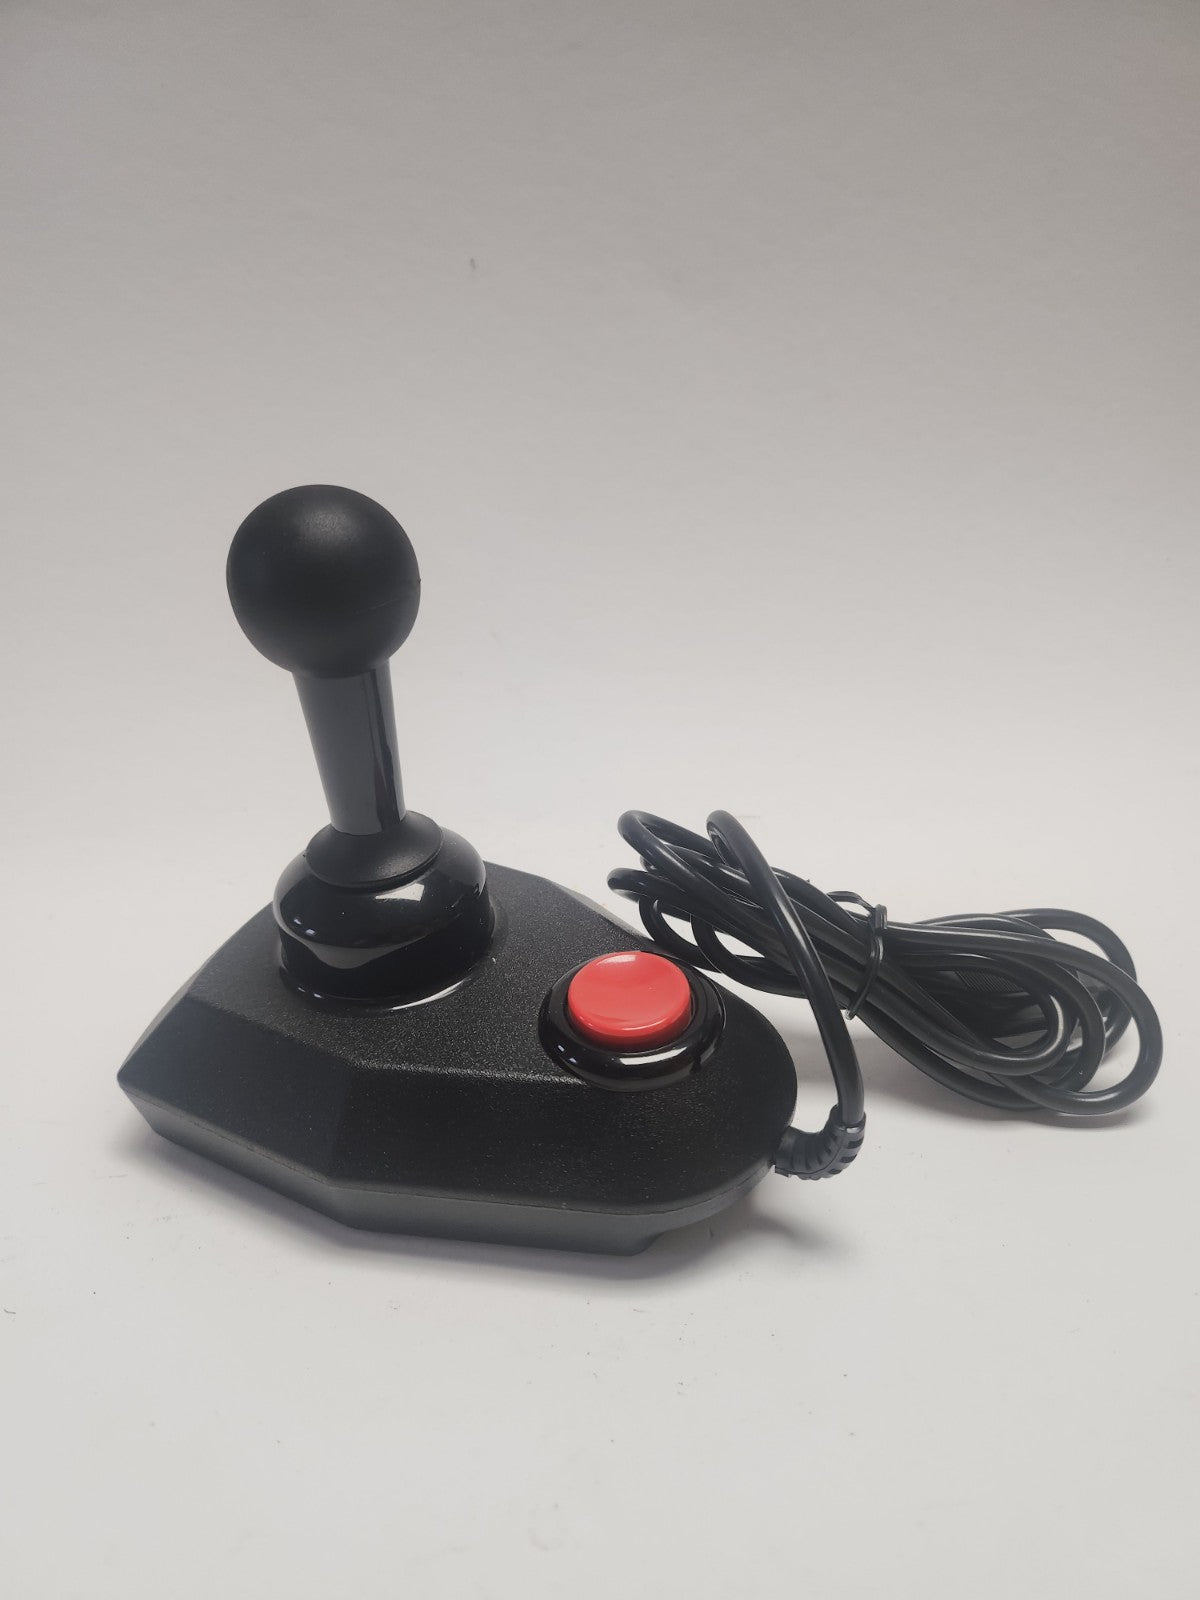 The Arcade Joystick in doos oa Atari en Commodore 64